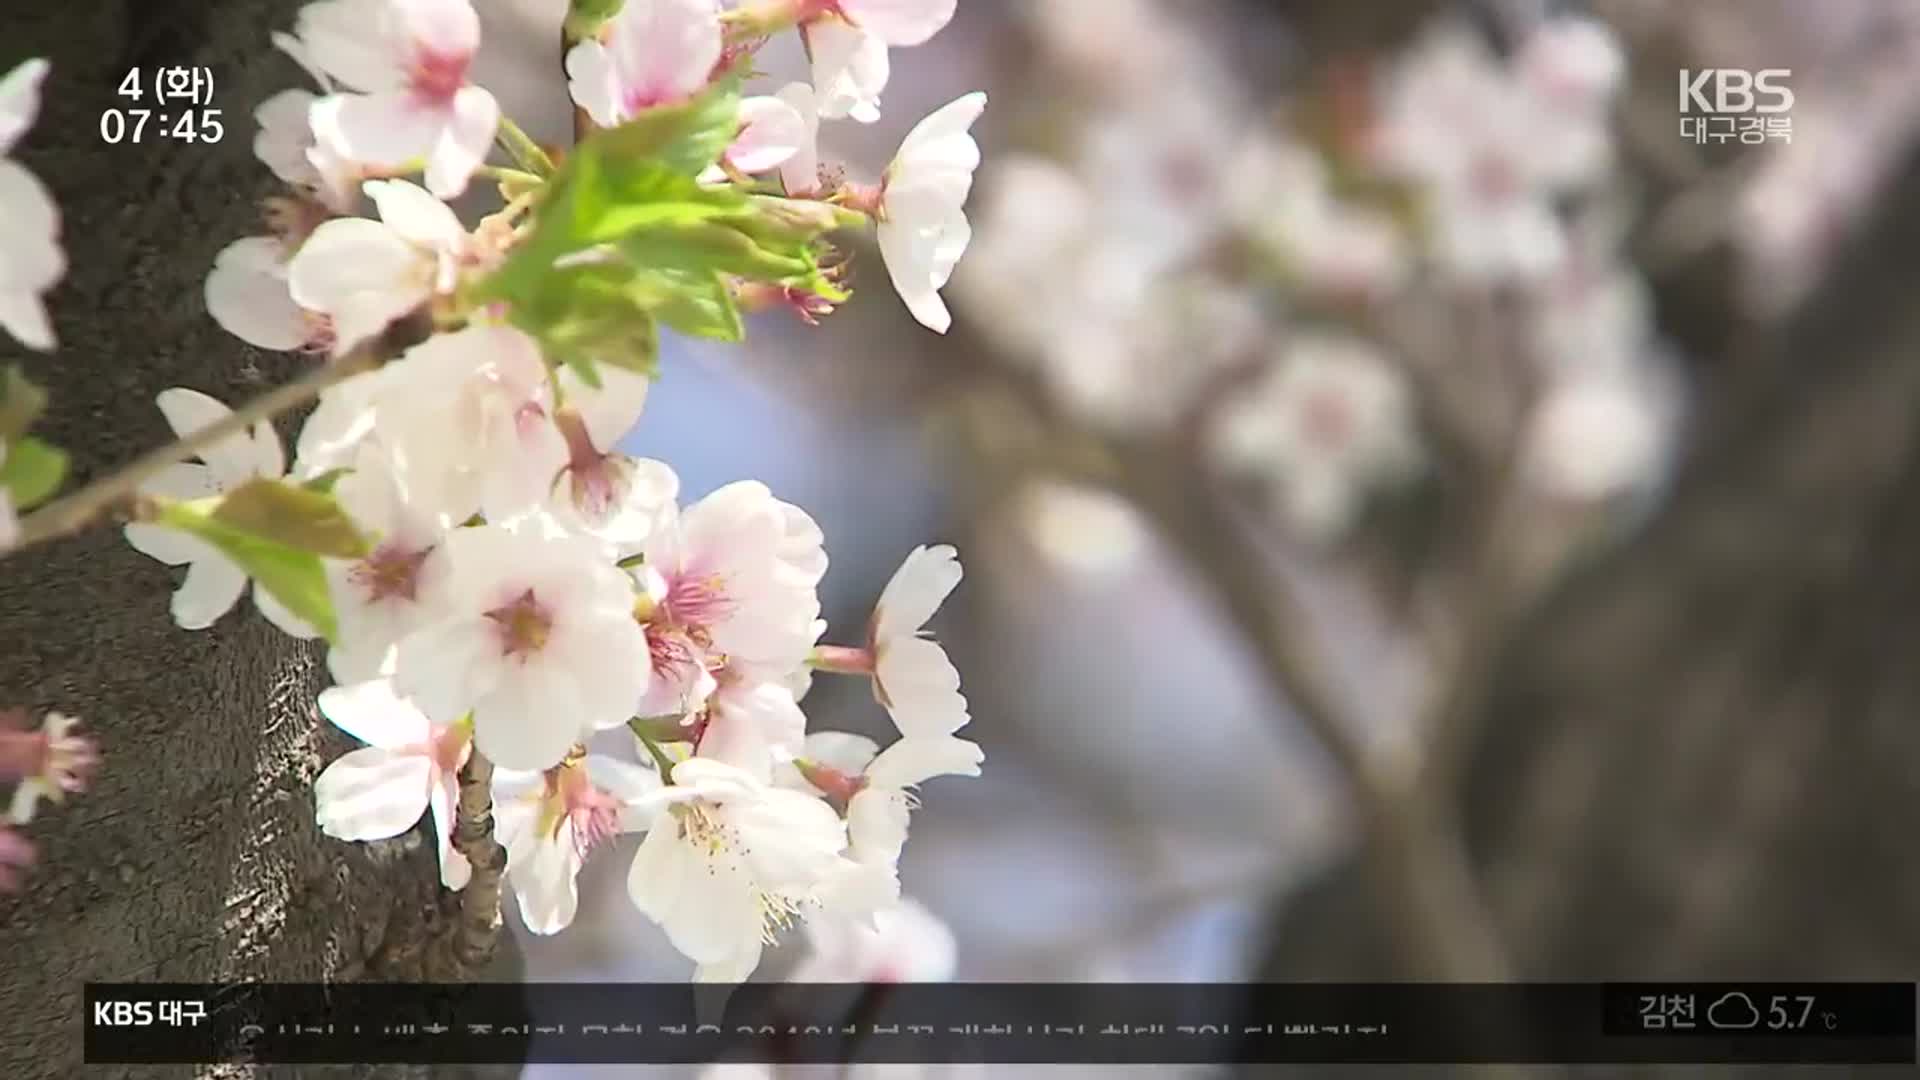 기후 변화에 이른 벚꽃…지자체 축제 당황